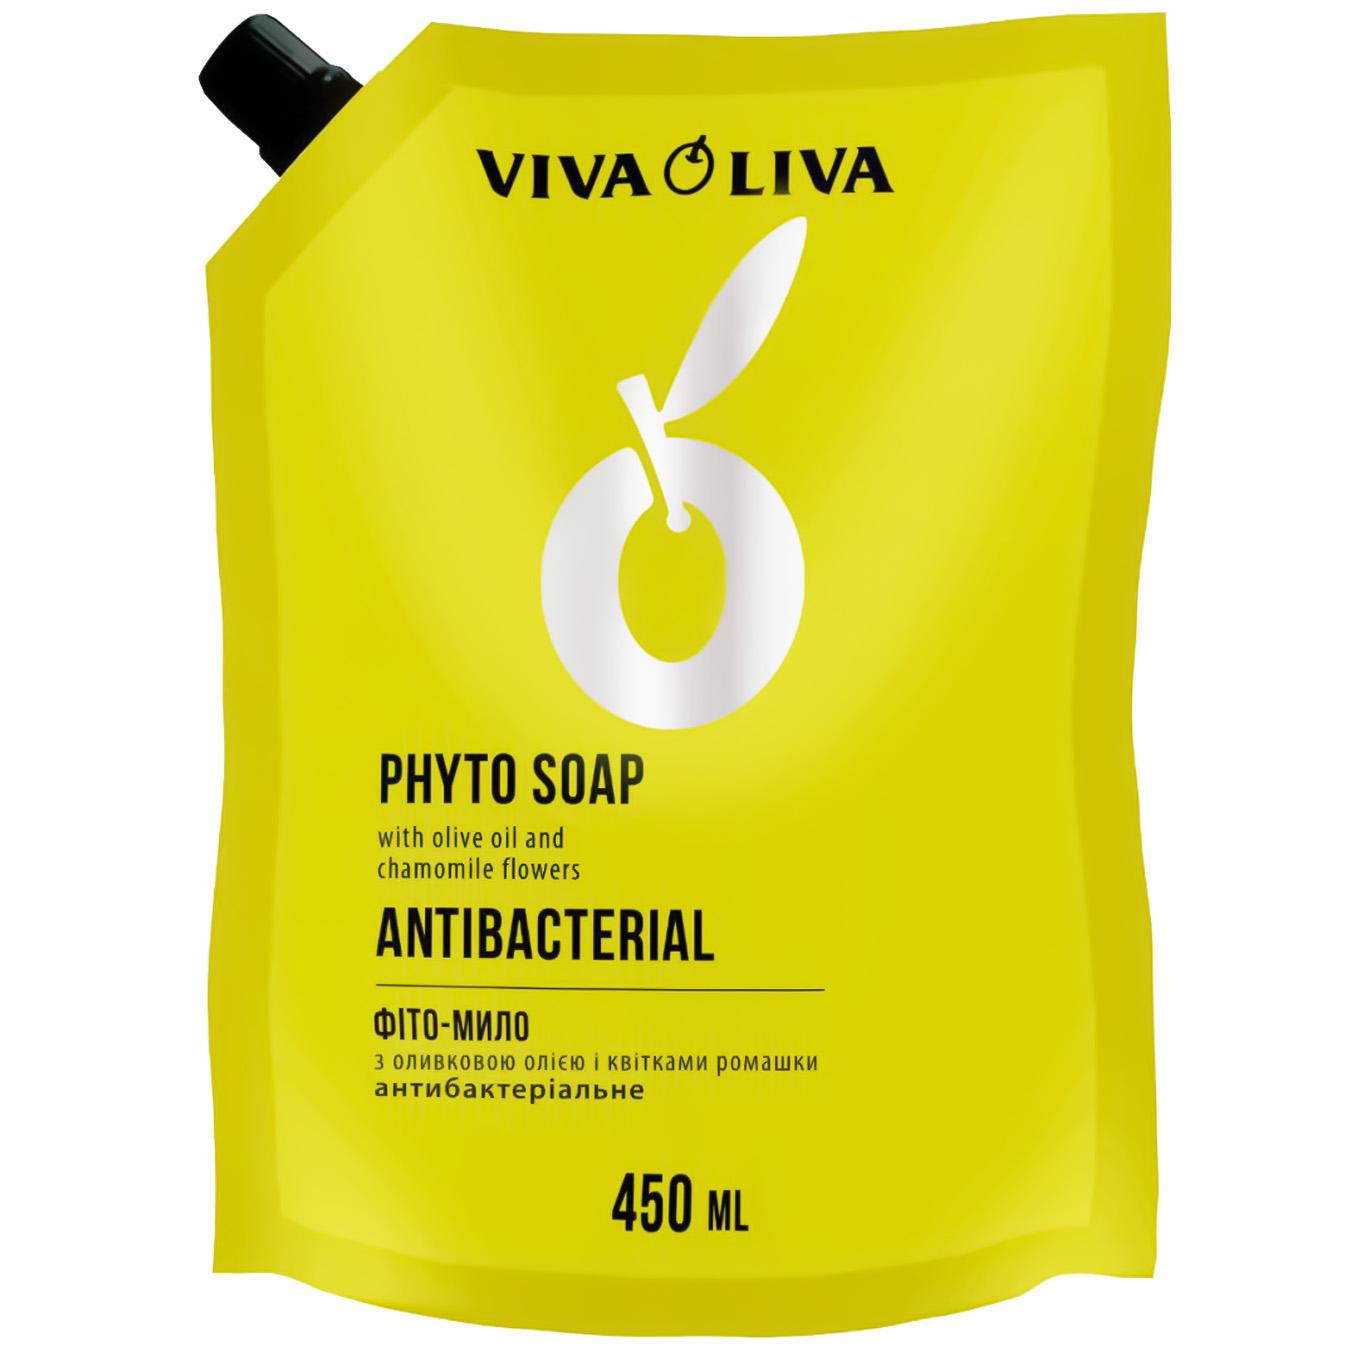 Фито-мыло Viva oliva duo-pack жидкое антибактериальное 450мл